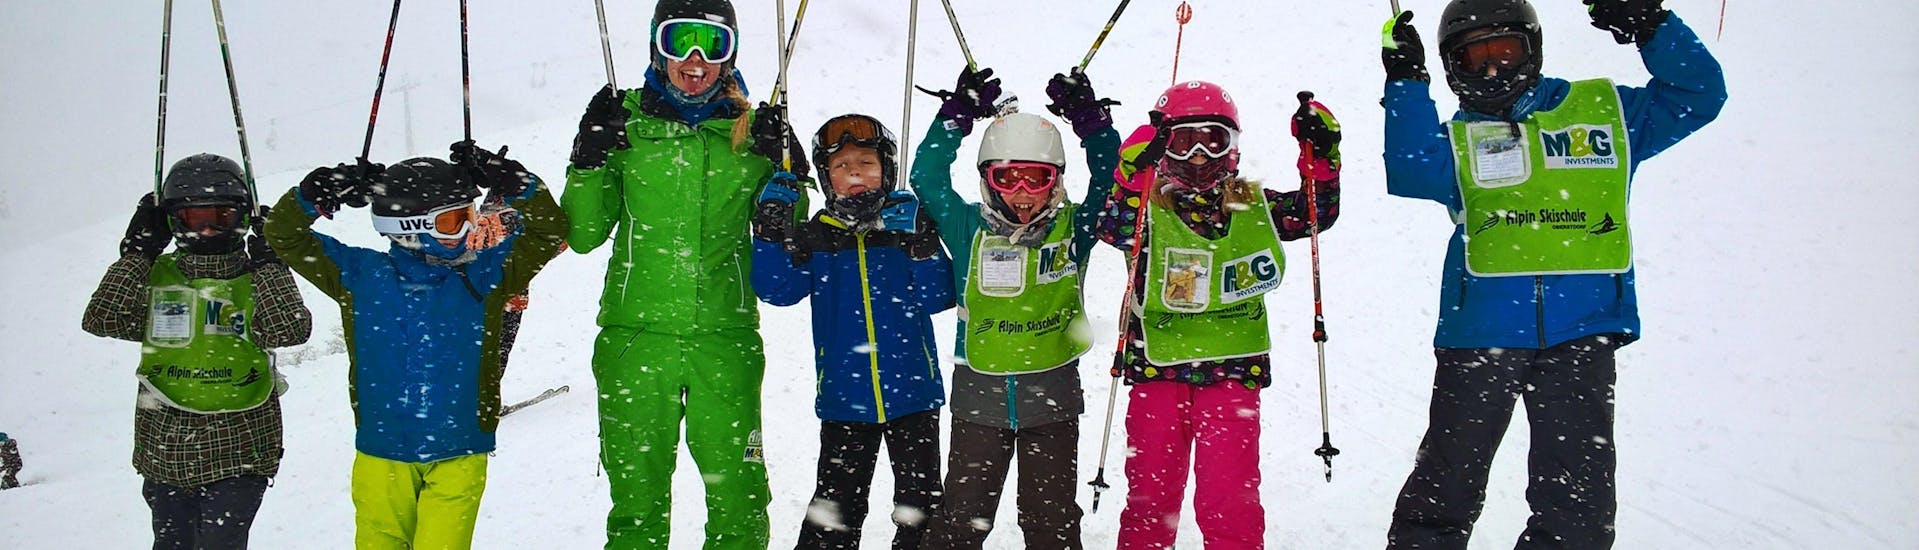 Kinder haben Spaß im Kinder Skikurs (7-8 Jahre) - Anfänger organisiert von der Alpin Skischule Oberstdorf.